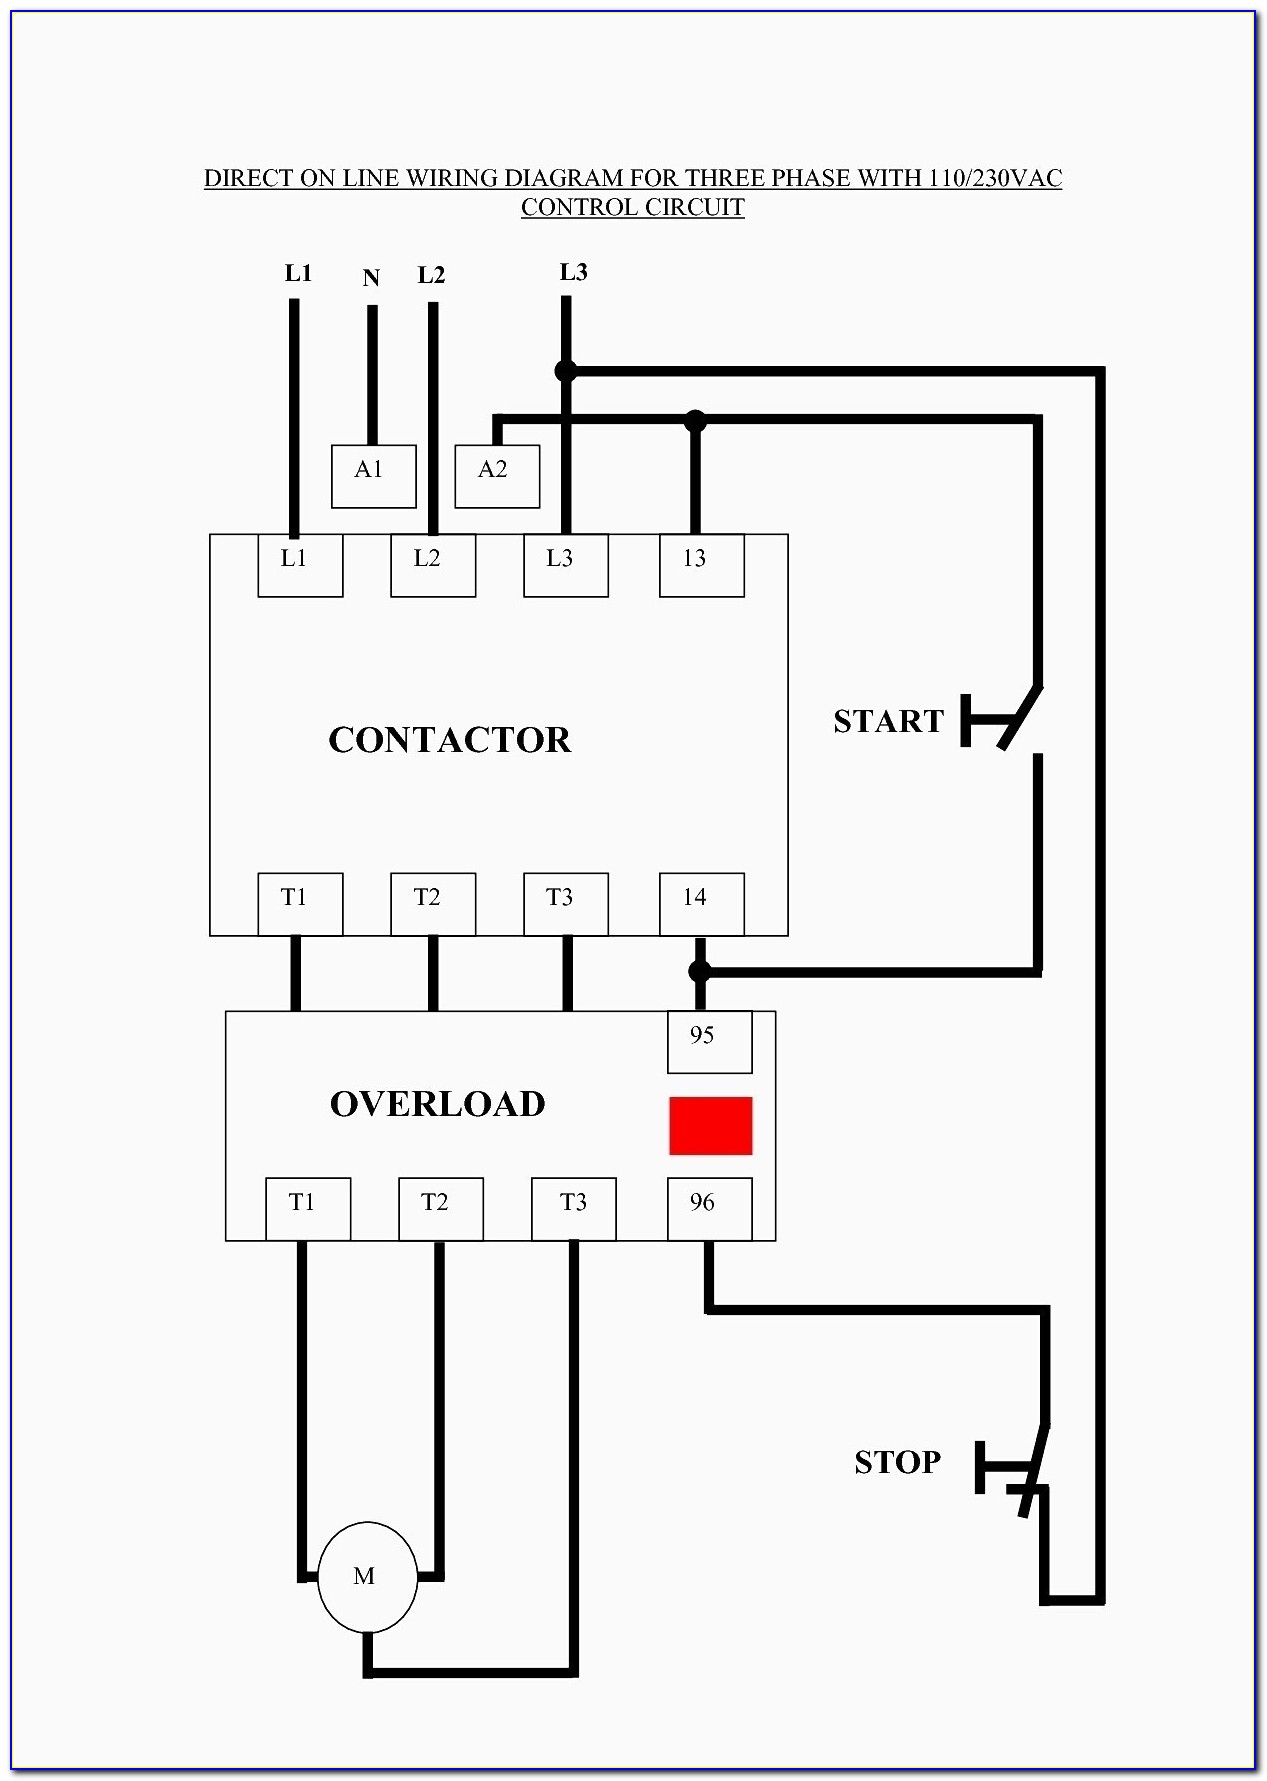 Square D 3 Phase Motor Starter Wiring Diagram Pdf